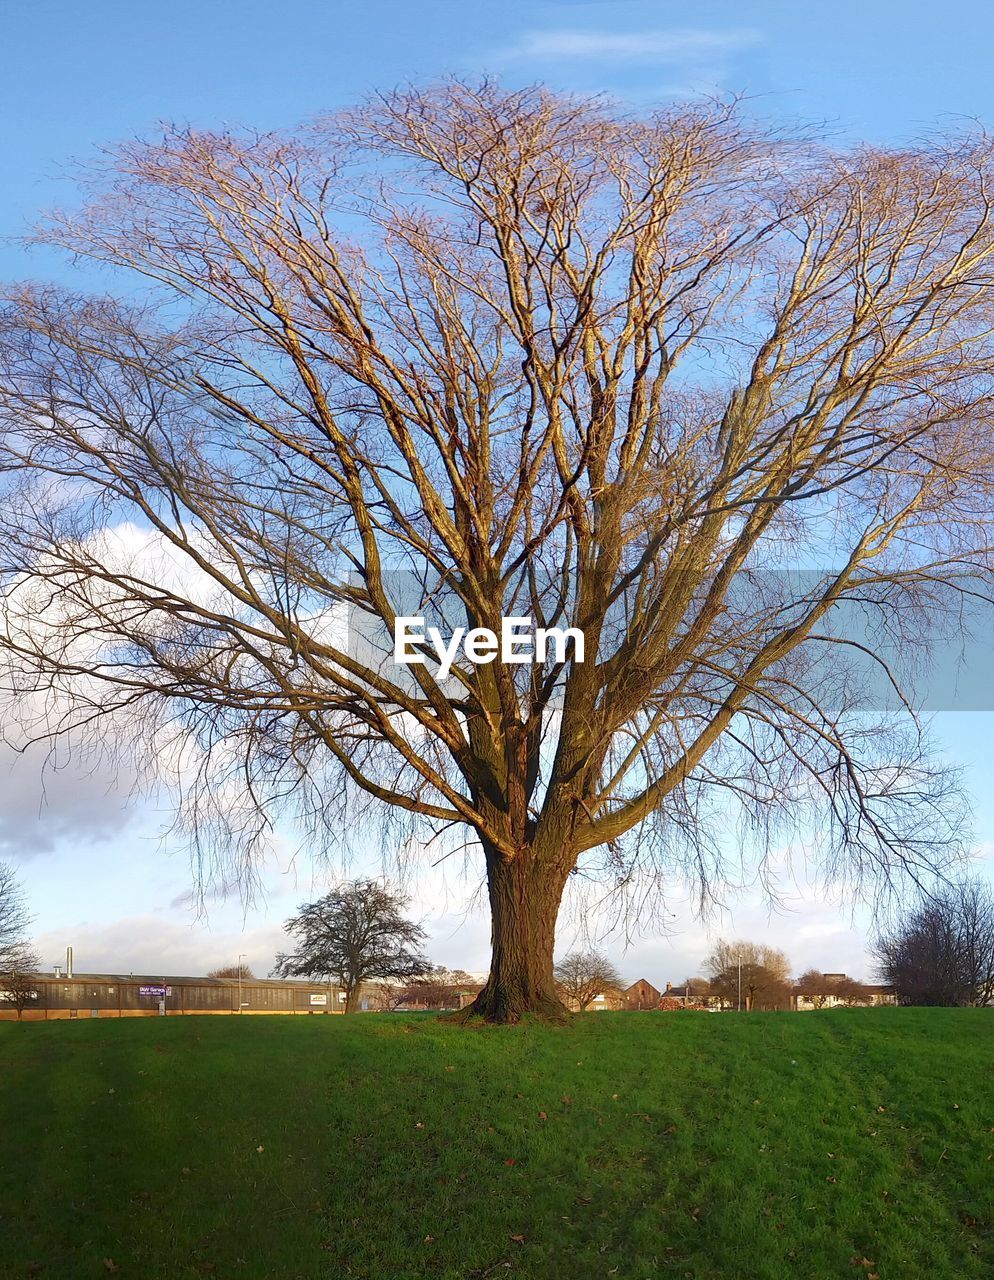 View of huge tree